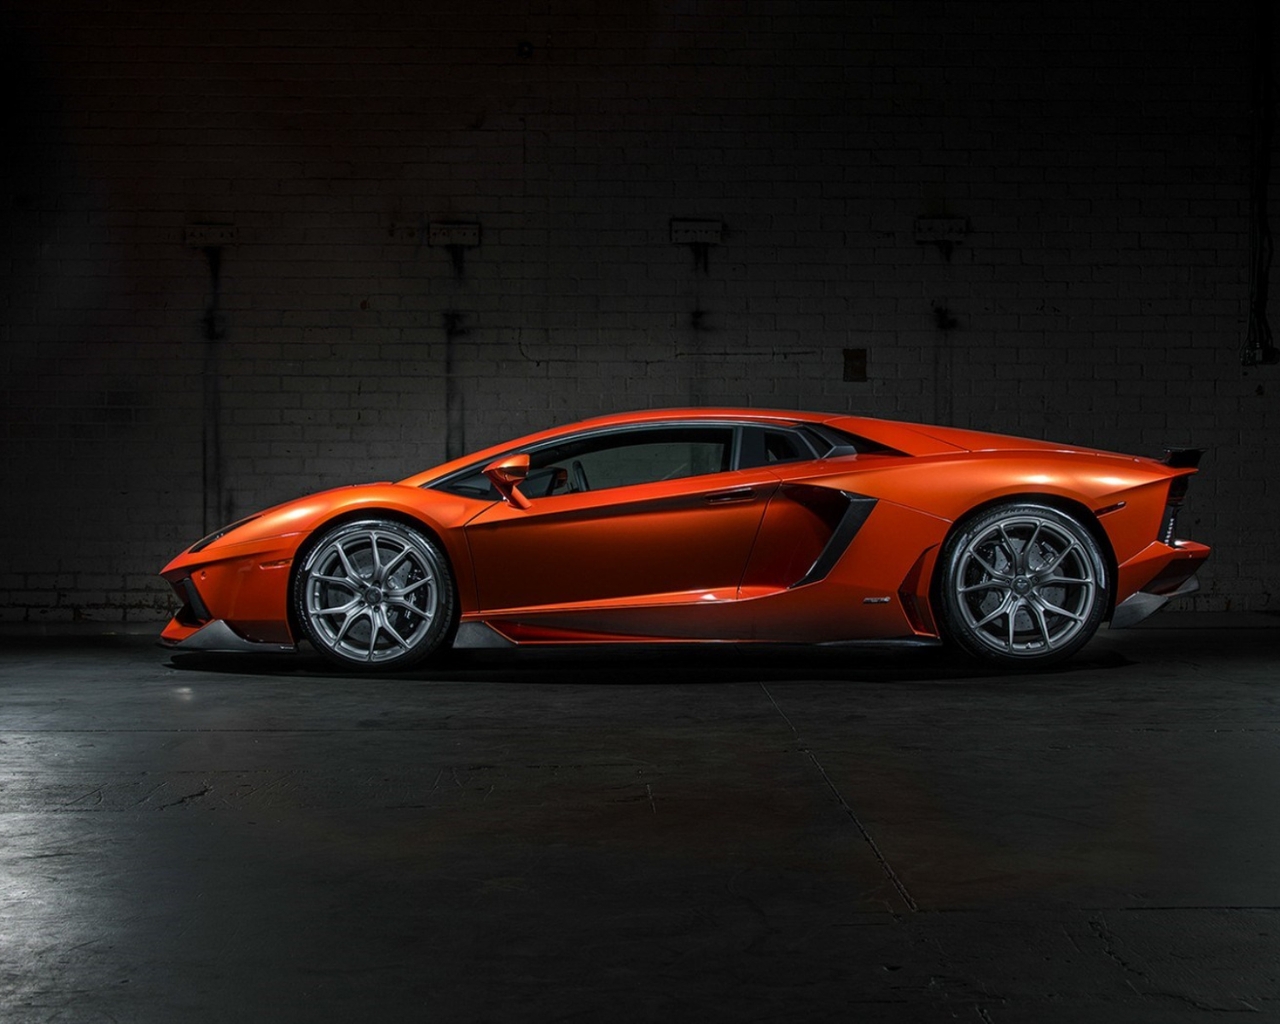 Картинка: Lamborghini, Aventador, LP 700-4, литьё, цвет, оранжевый, помещение